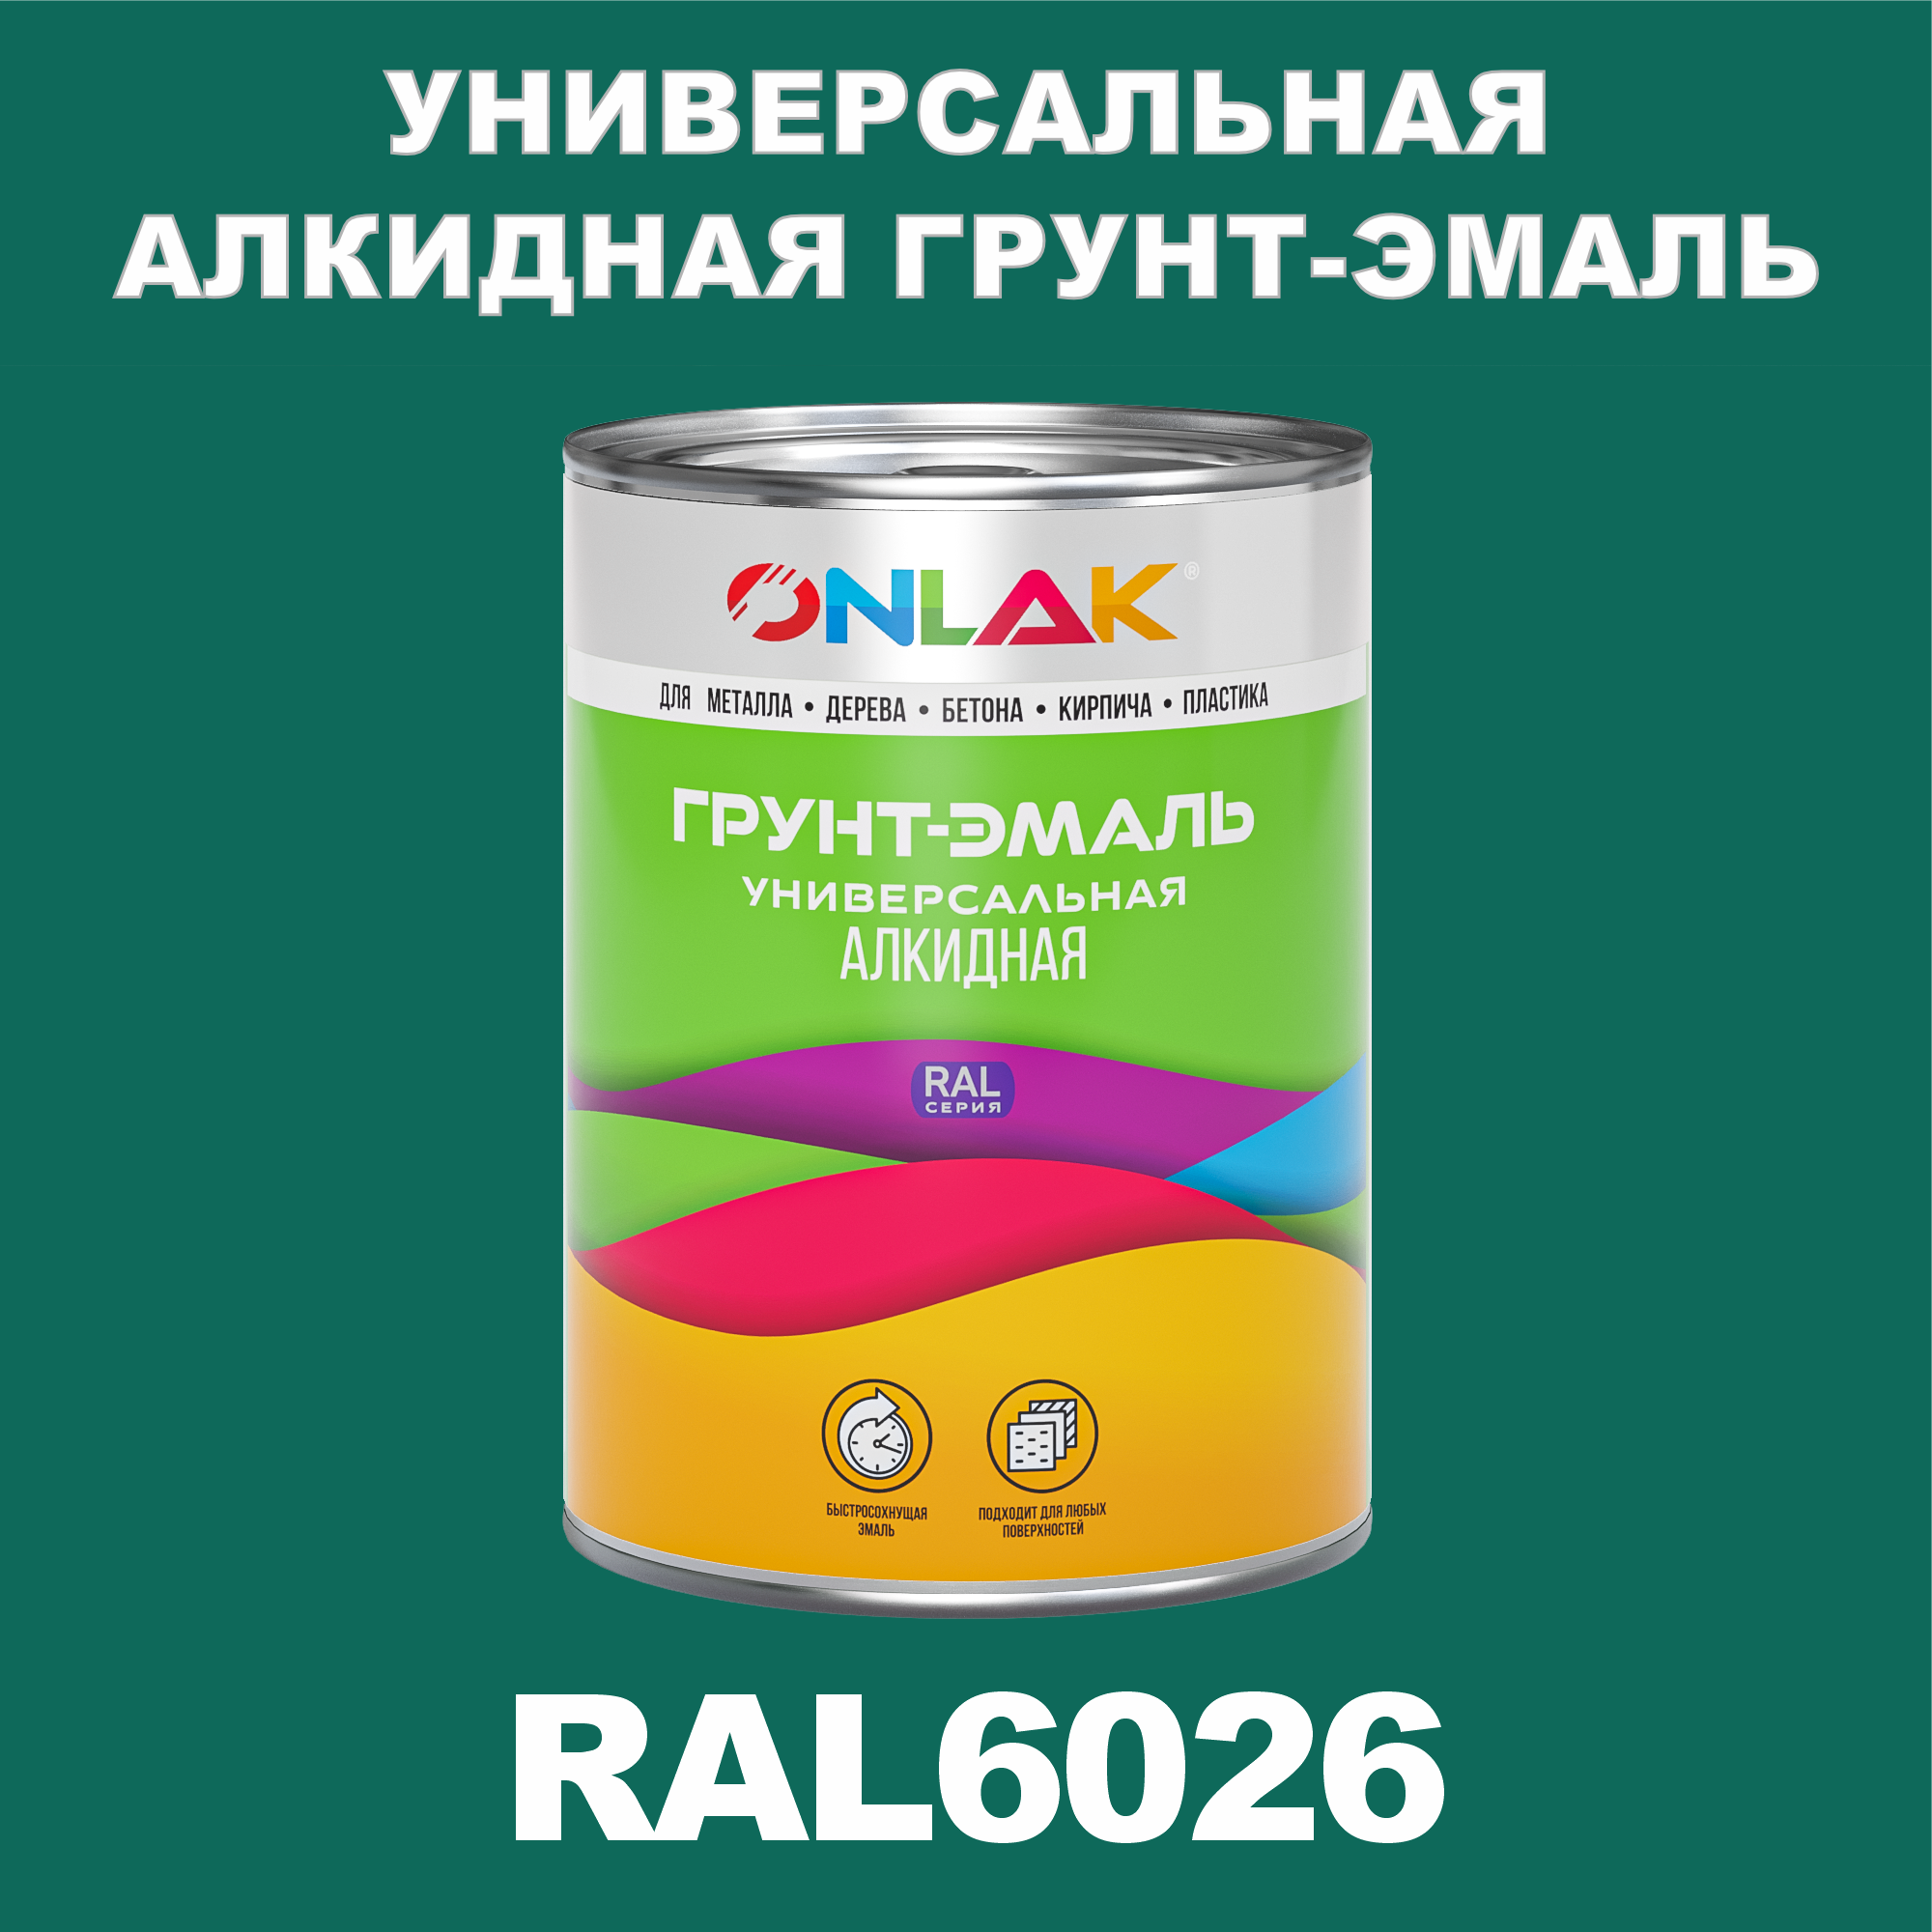 Грунт-эмаль ONLAK 1К RAL6026 антикоррозионная алкидная по металлу по ржавчине 1 кг грунт эмаль престиж по ржавчине алкидная зеленая 1 9 кг